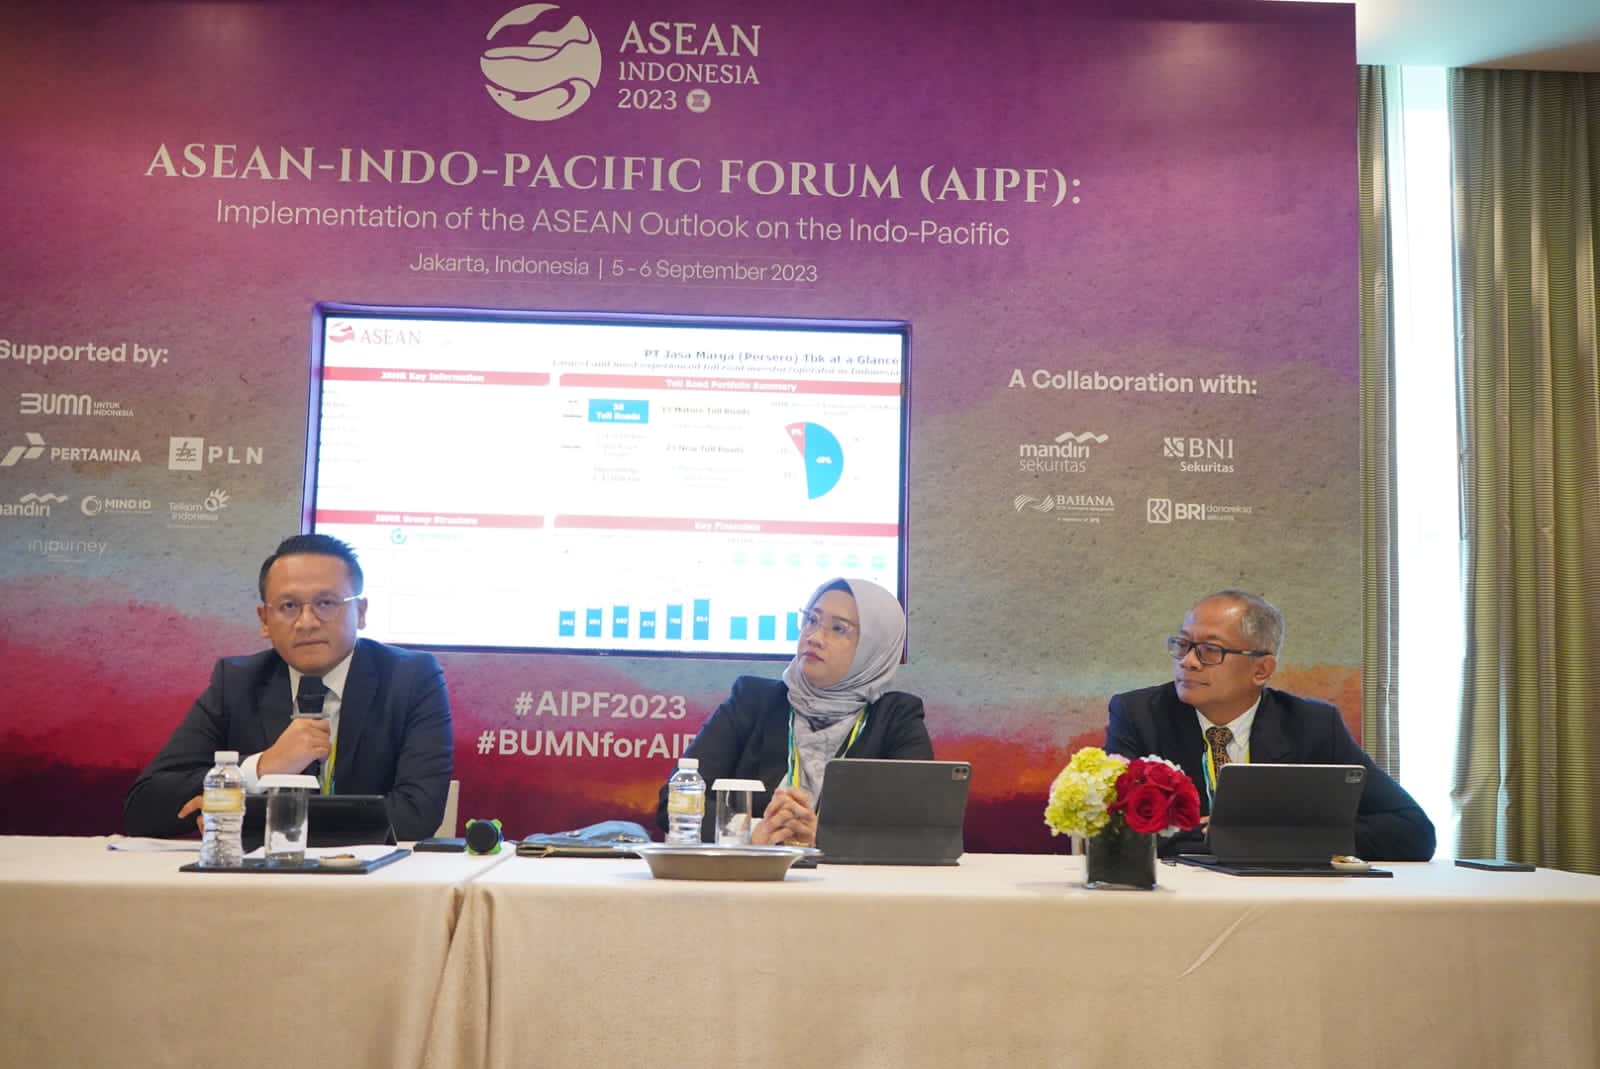 Jasa Marga (JSMR) Tawarkan 4 Jalan Tol pada Investor Strategis di Ajang AIPF 2023